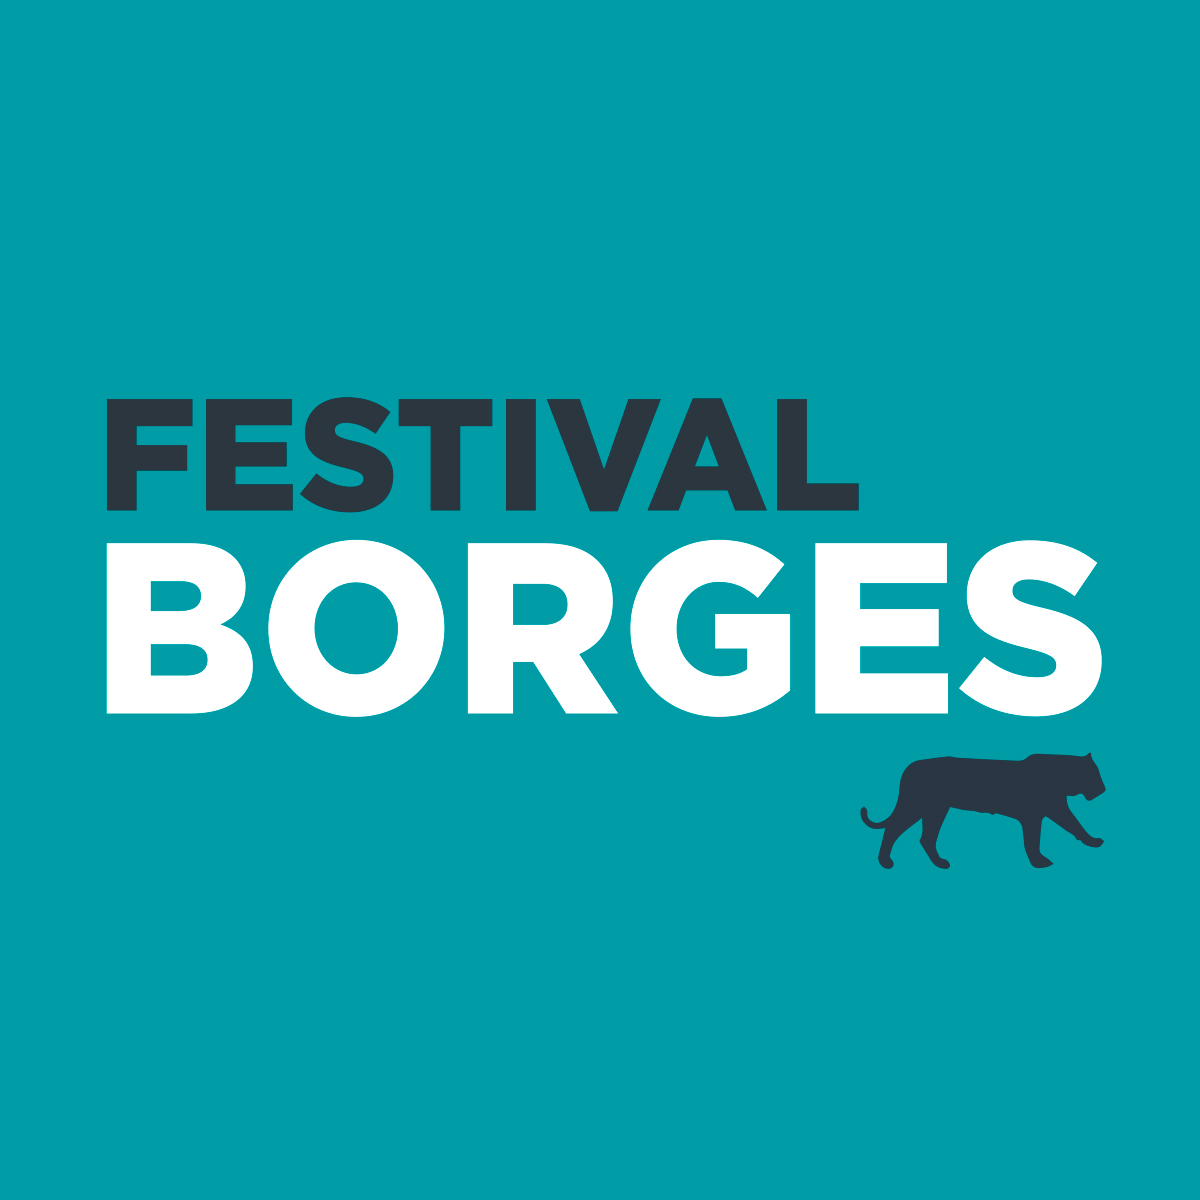 Alonso: “Este año, el Festival Borges es del 5 al 9 de junio”